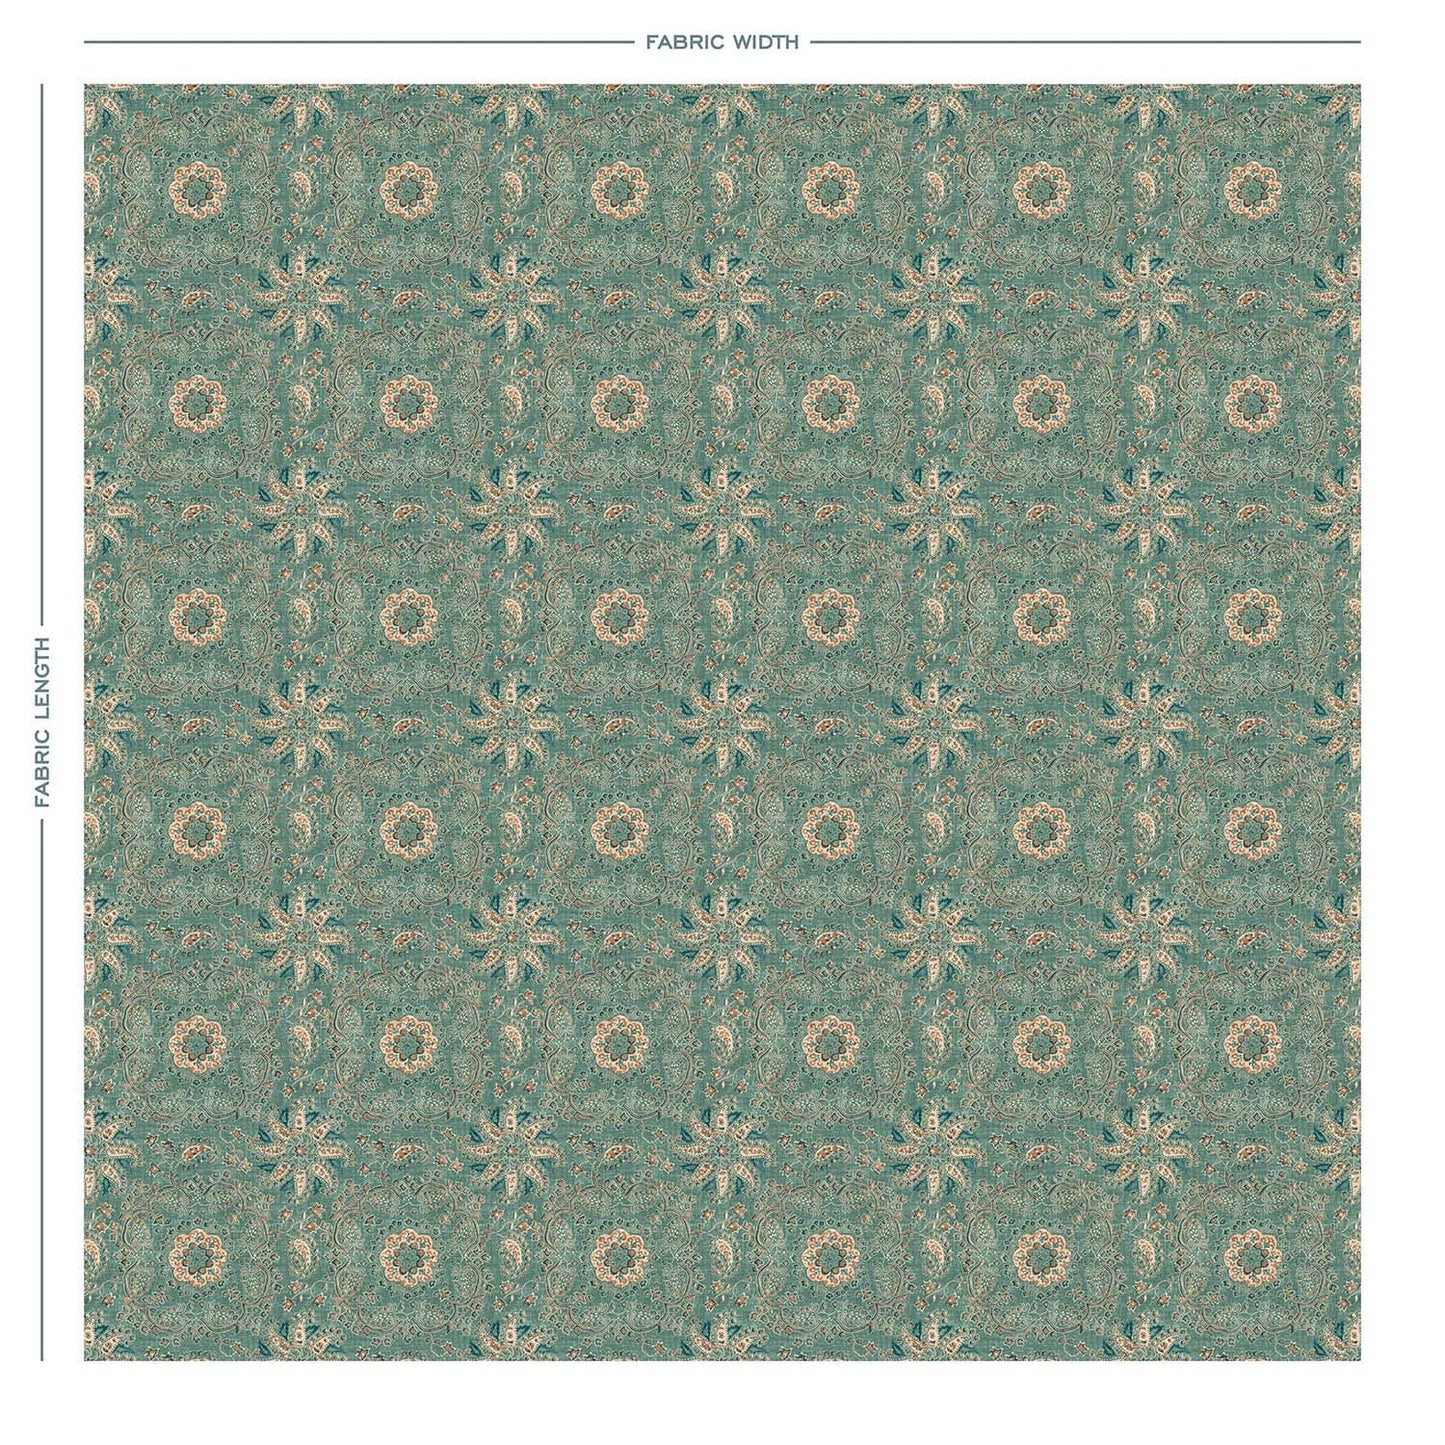 ADALINE Teal Linen Mix Fabric - Warner House